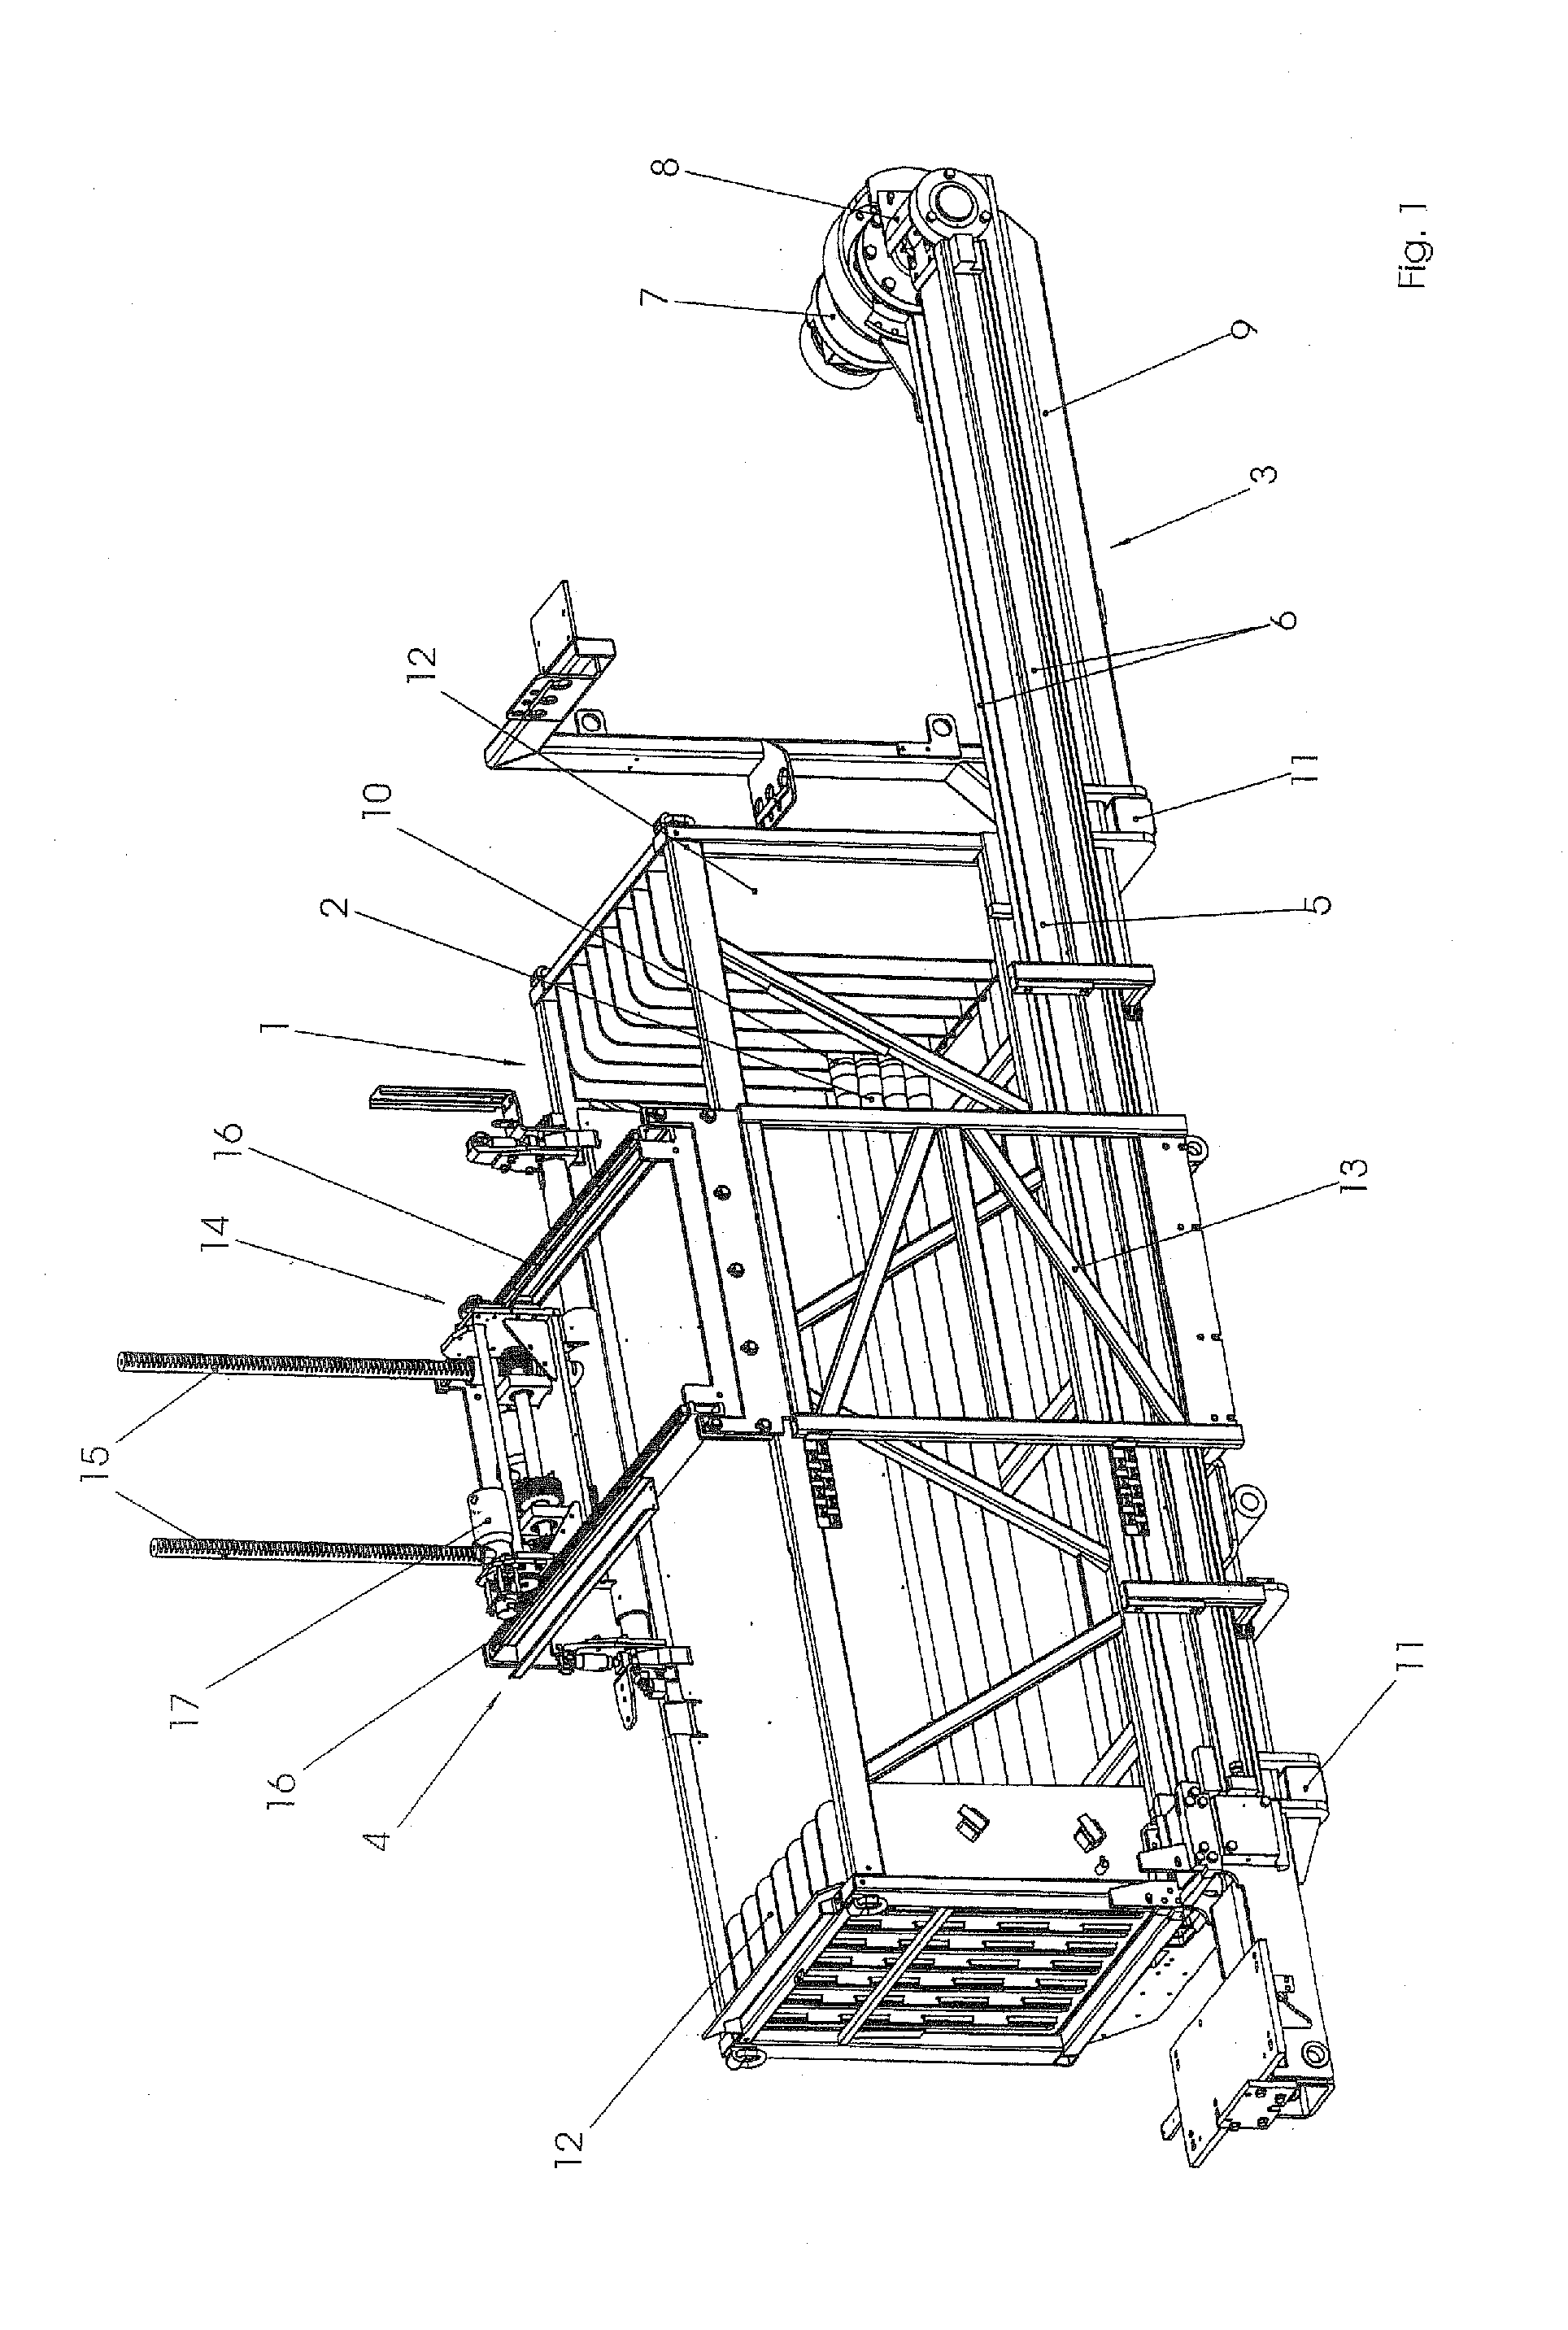 Drilling apparatus